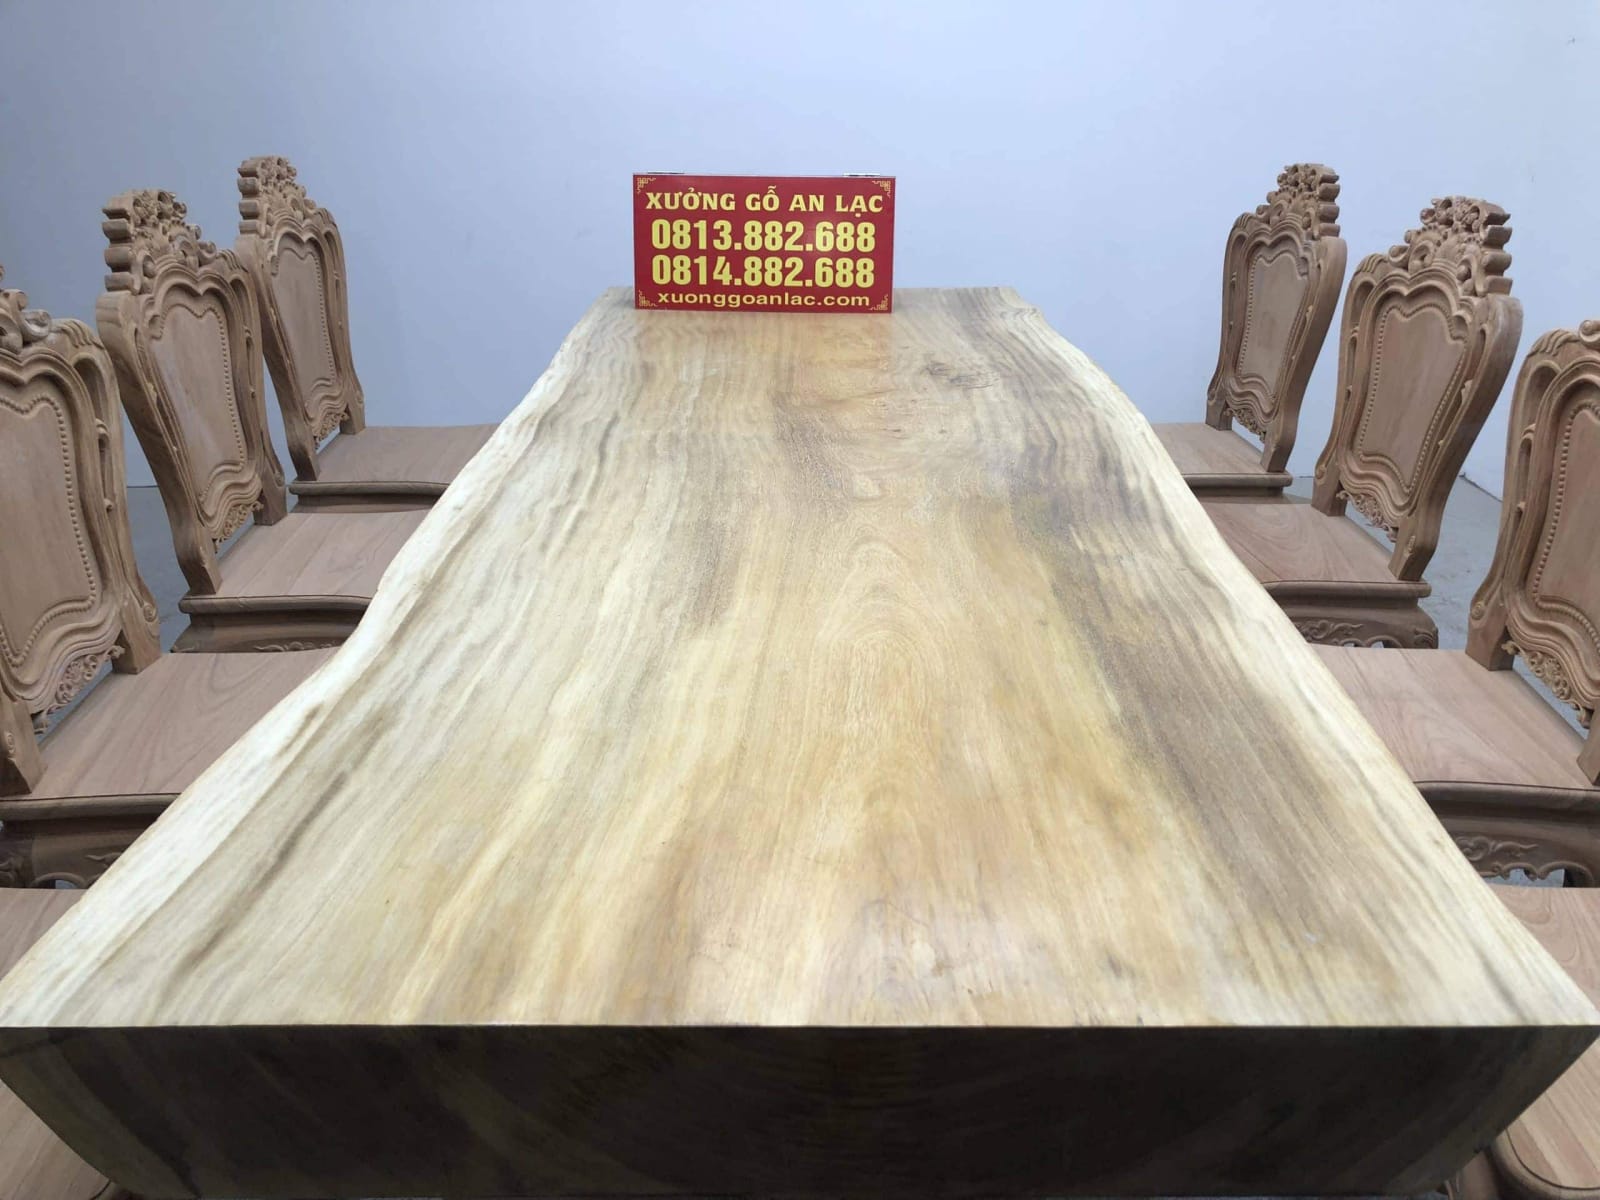 Với bộ bàn ghế gỗ nguyên khối, chúng tôi cam kết mang đến cho bạn sản phẩm chất lượng nhất với giá cả hợp lý nhất. Sản phẩm của chúng tôi được chế tác từ gỗ đẹp và bền chắc, mang đến cho không gian nội thất của bạn một phong cách sang trọng, lịch sự và đầy màu sắc.